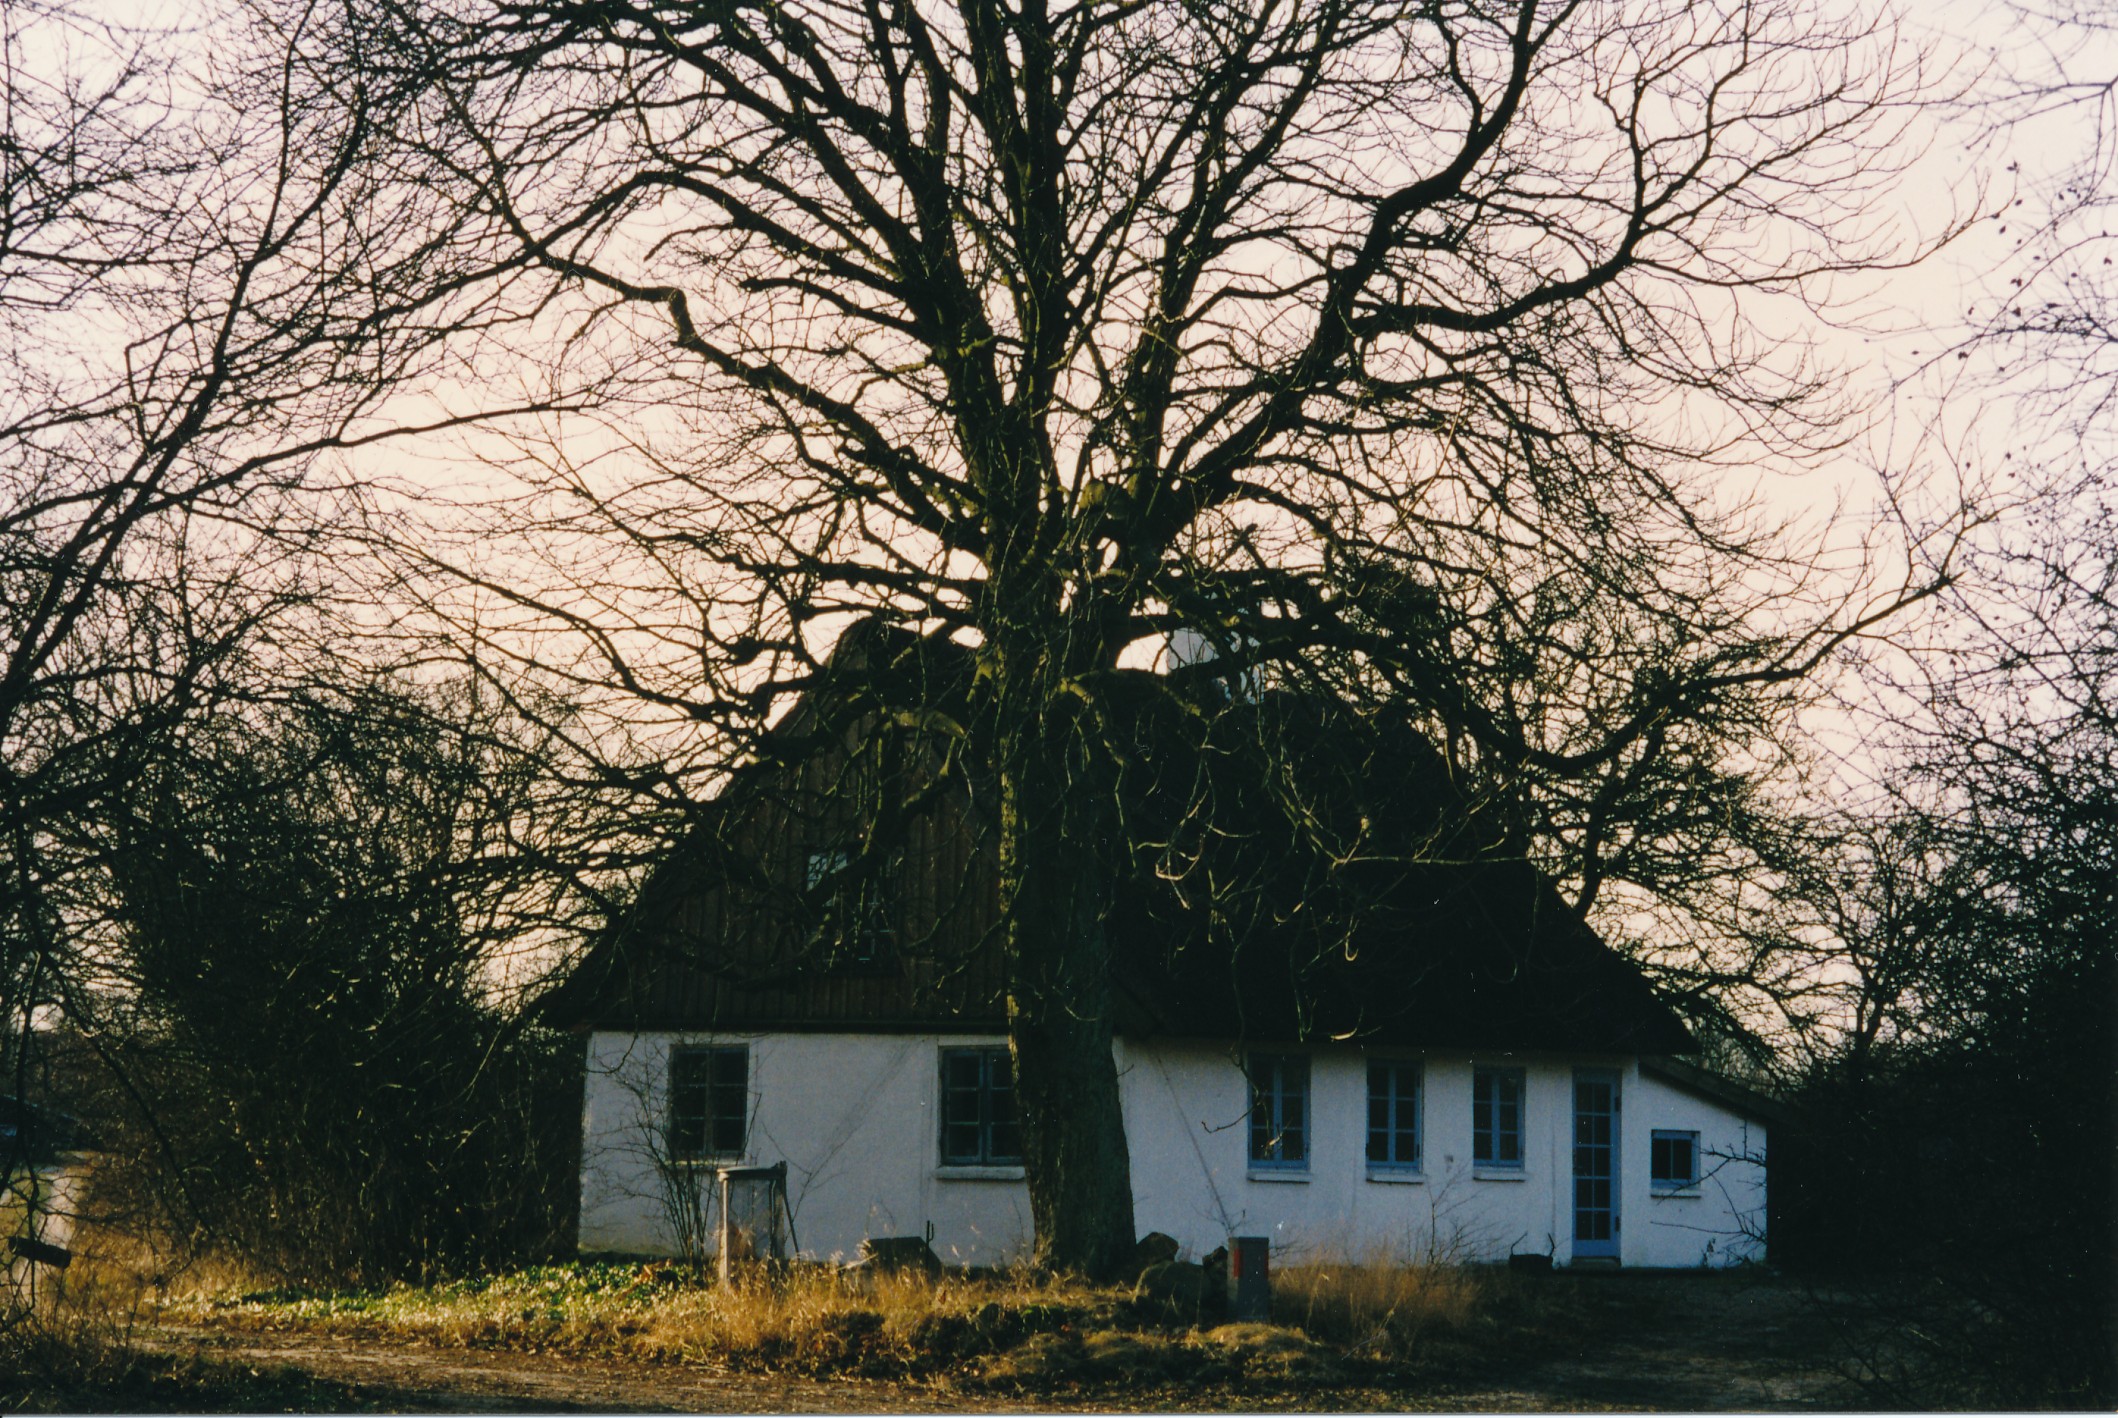 Ulkerupvej 9 - ca. 1998 (B7503)